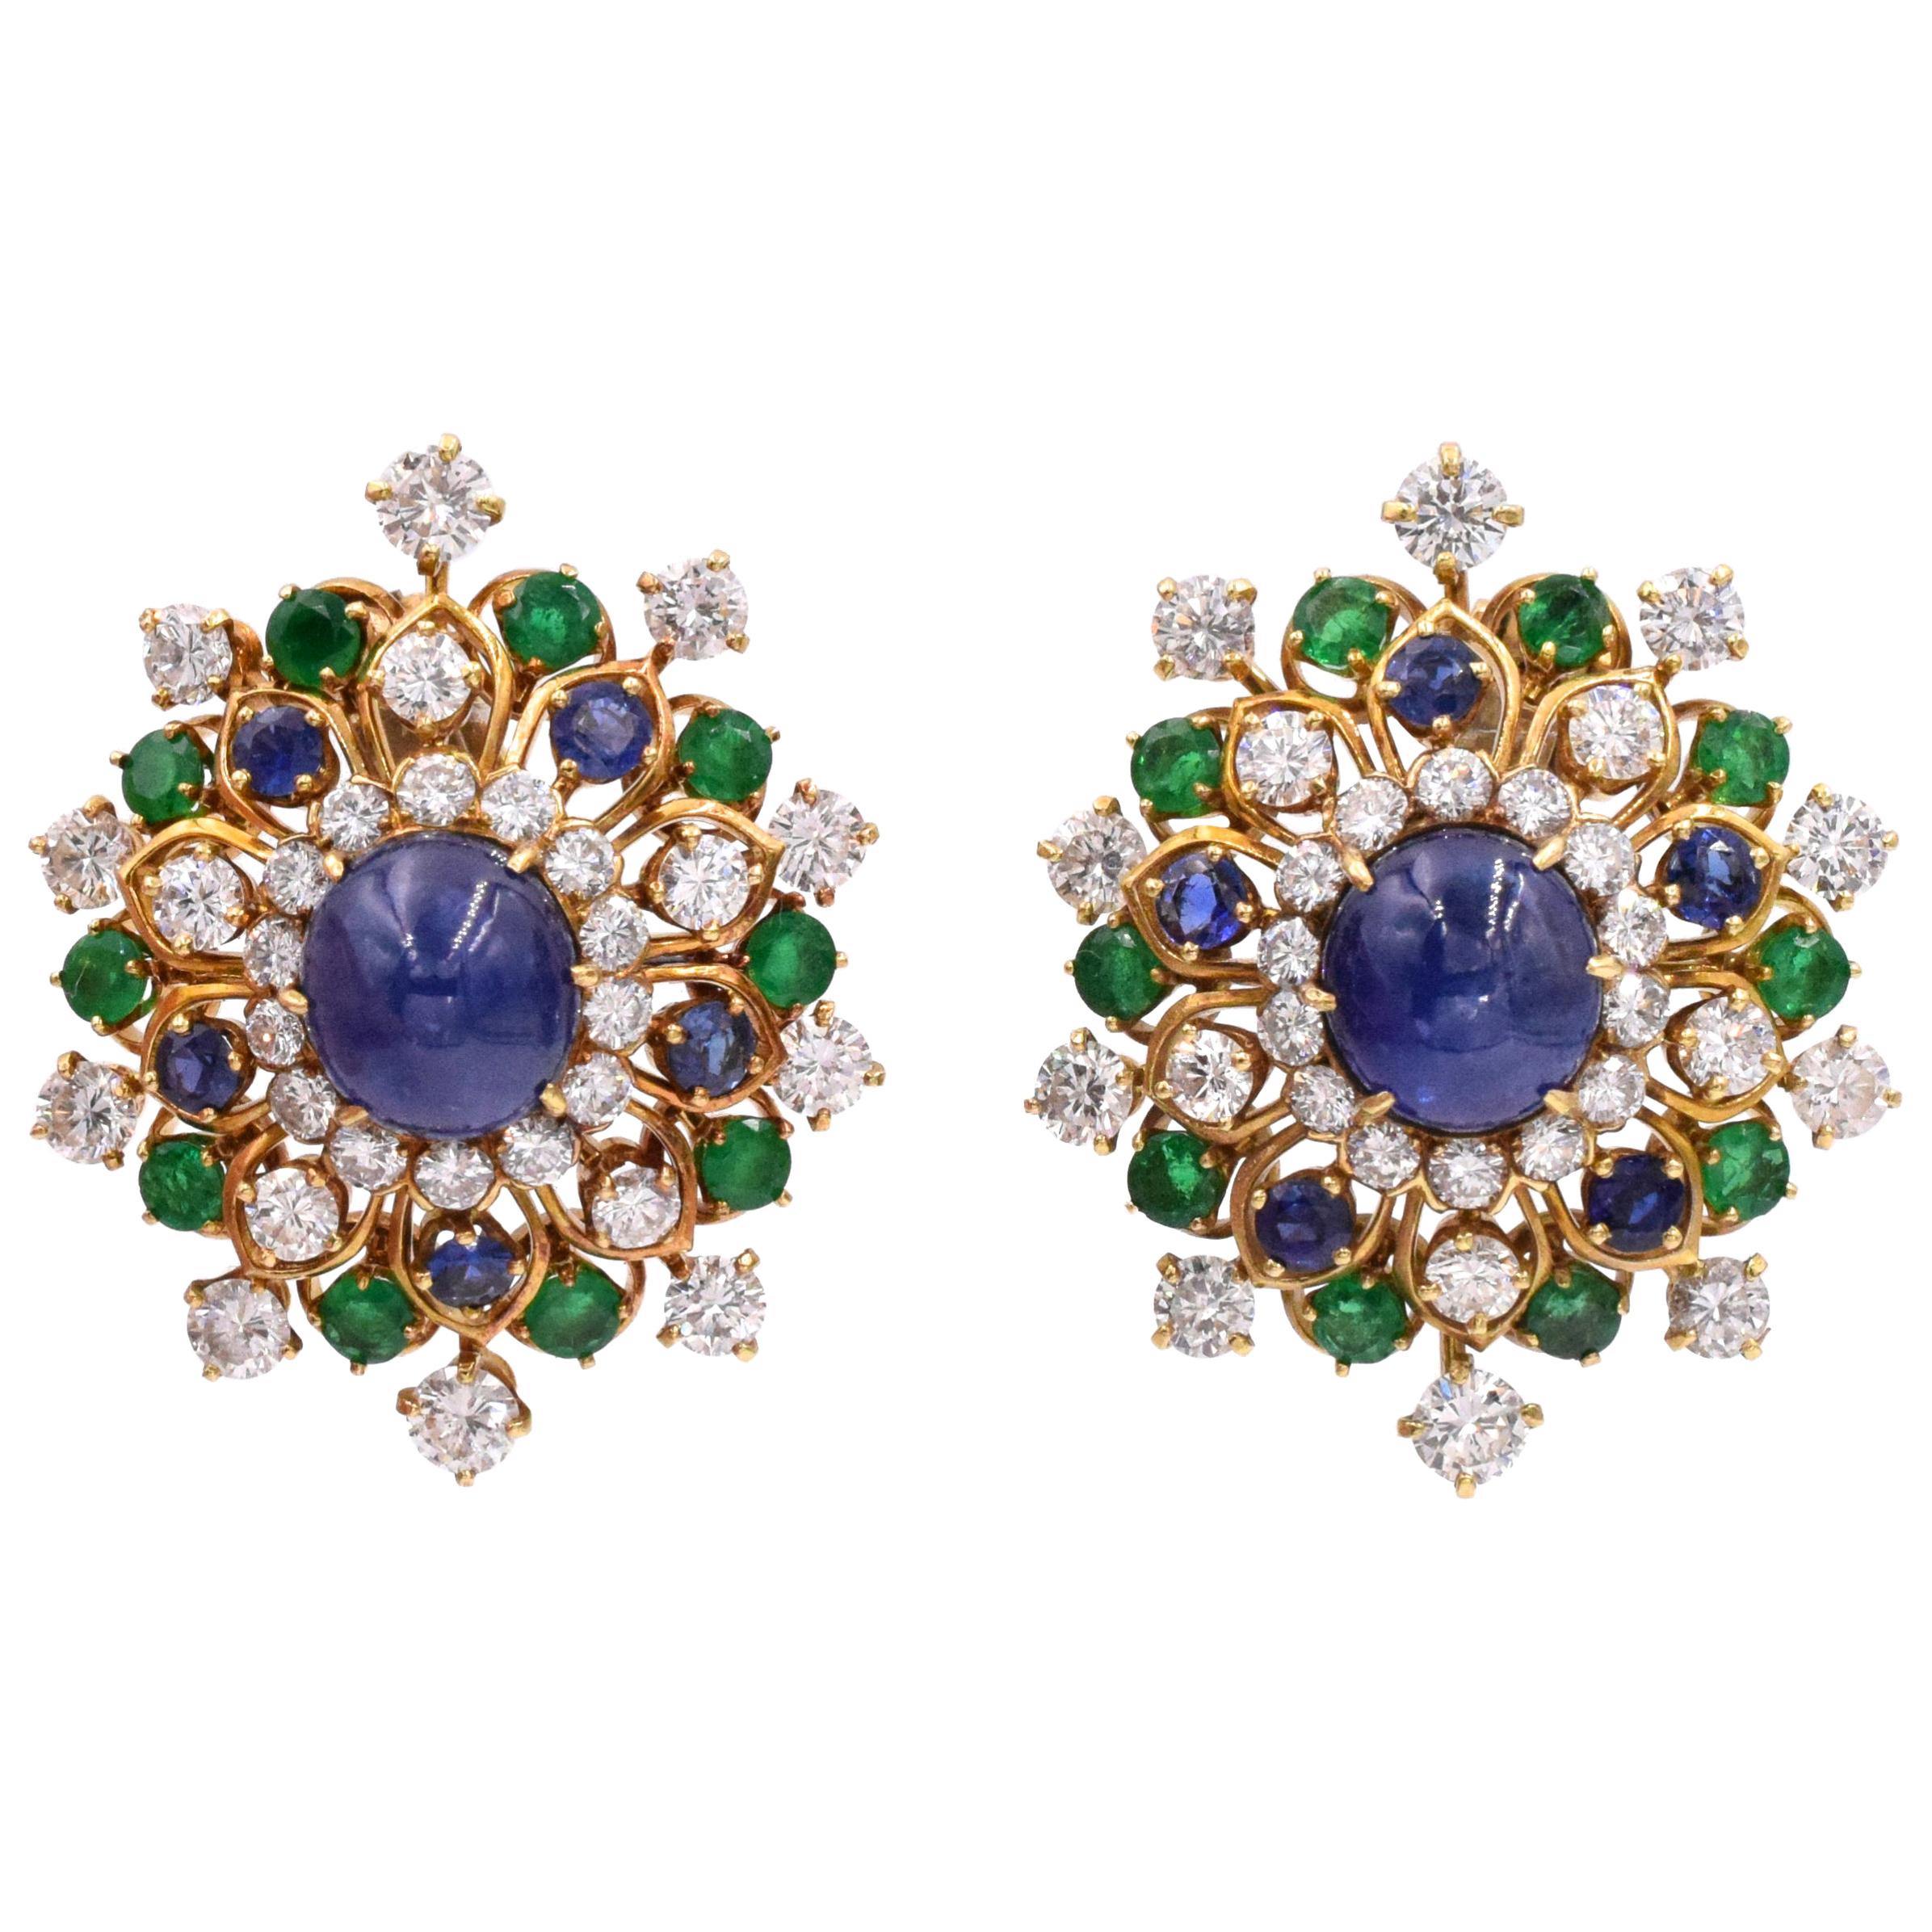 Vintage Van Cleef & Arpels Diamond and Gemstone Earrings